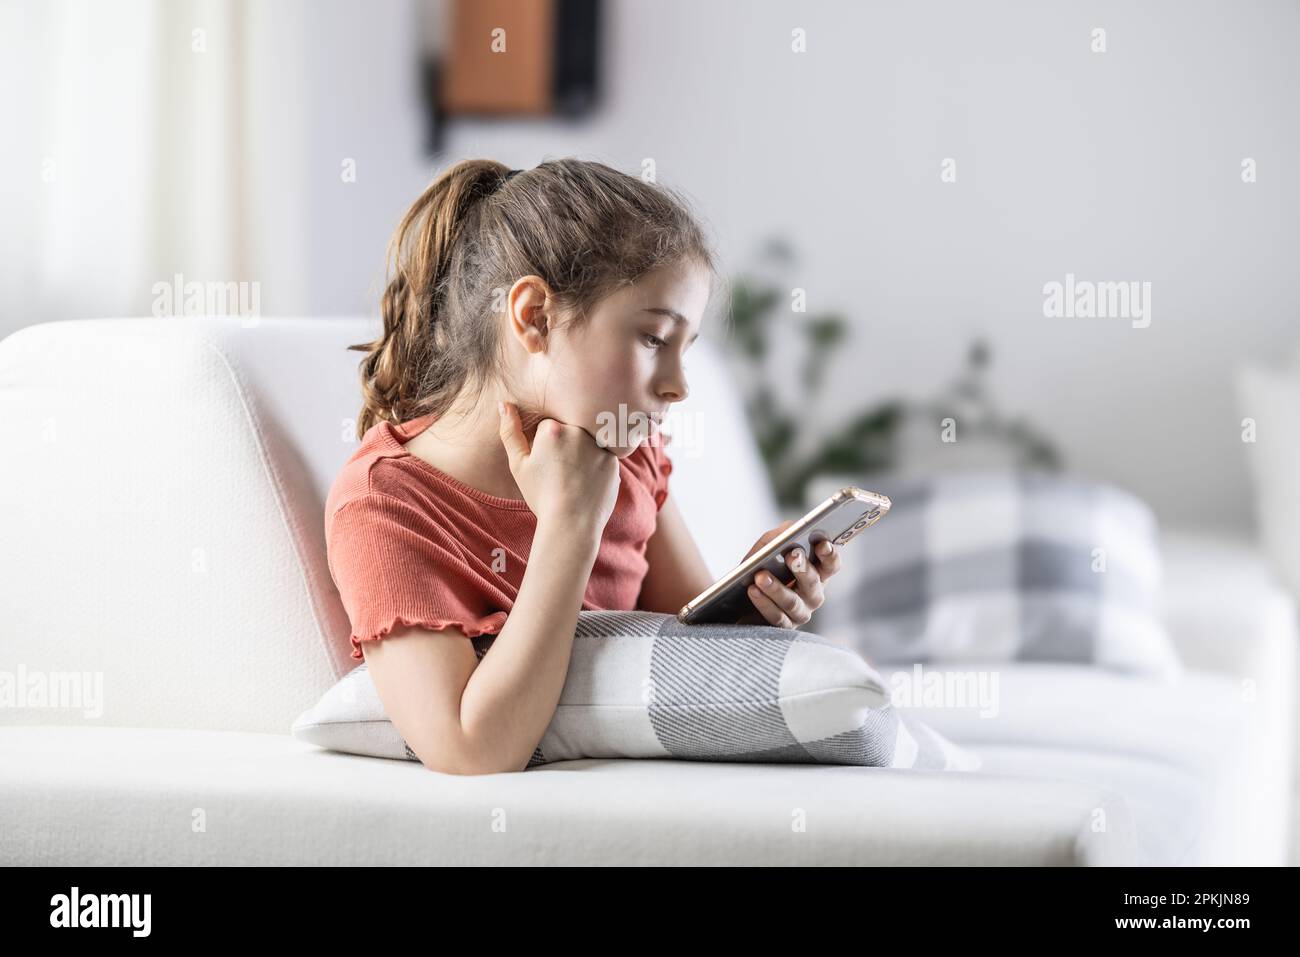 Die junge Generation ist immer auf ihren Telefonen, dargestellt von einem Mädchen zu Hause mit einem Handy in der Hand. Stockfoto